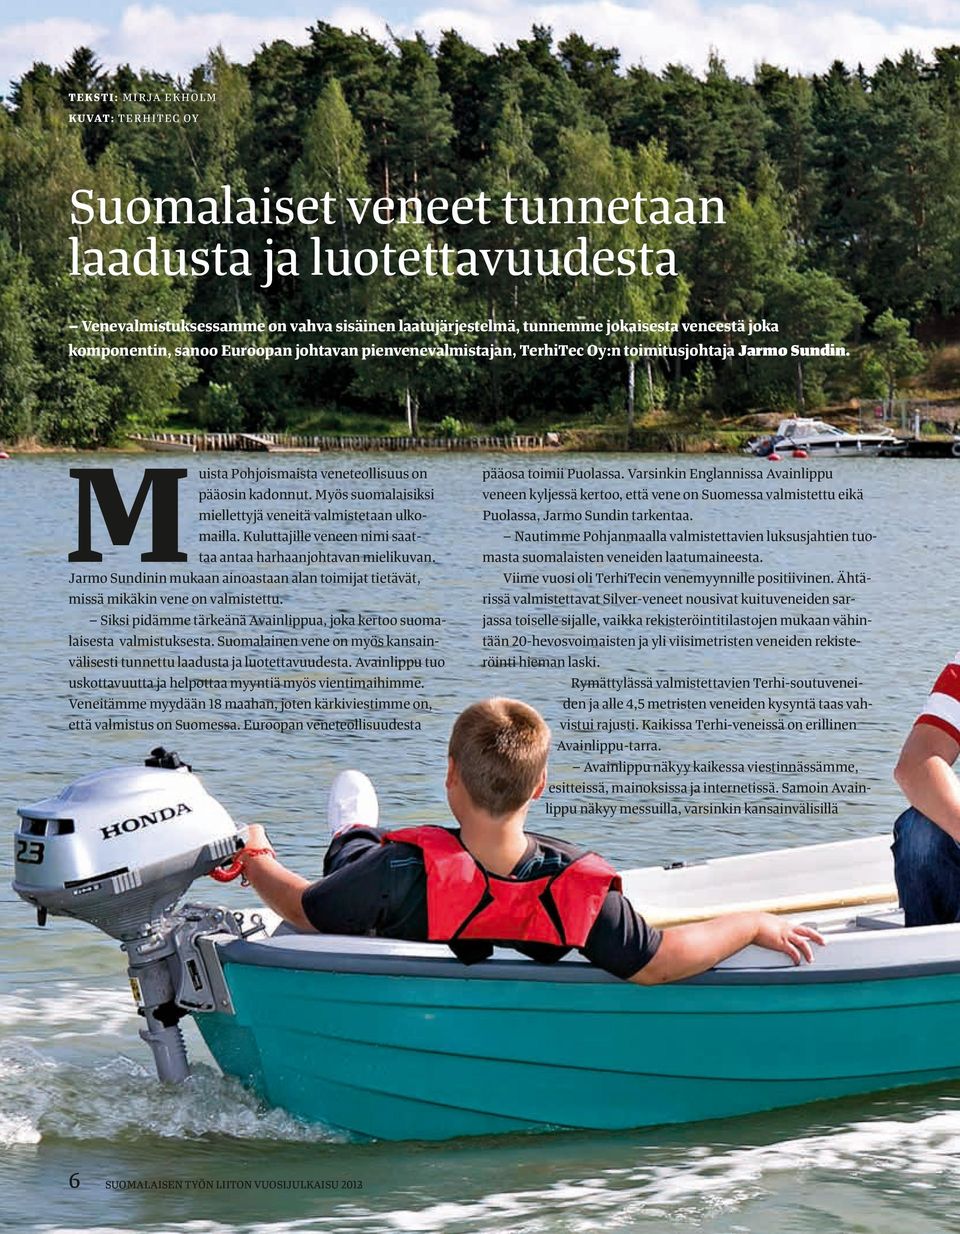 Myös suomalaisiksi miellettyjä veneitä valmistetaan ulkomailla. Kuluttajille veneen nimi saattaa antaa harhaanjohtavan mielikuvan.